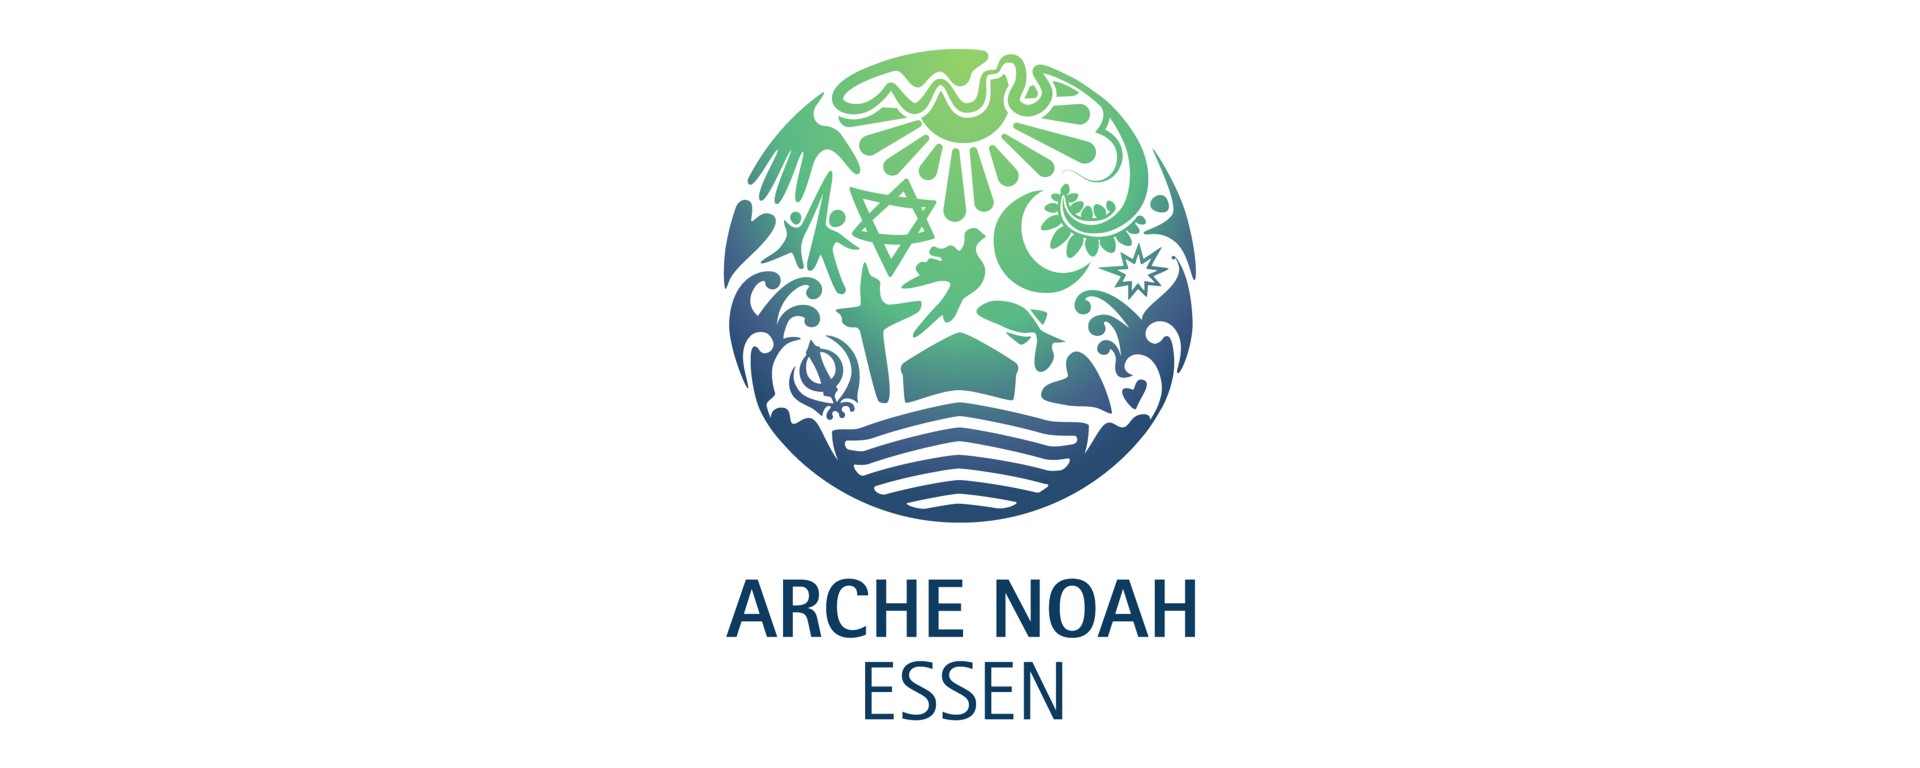 Arche Noah Essen 2022 – Aufruf zur Beteiligung gestartet